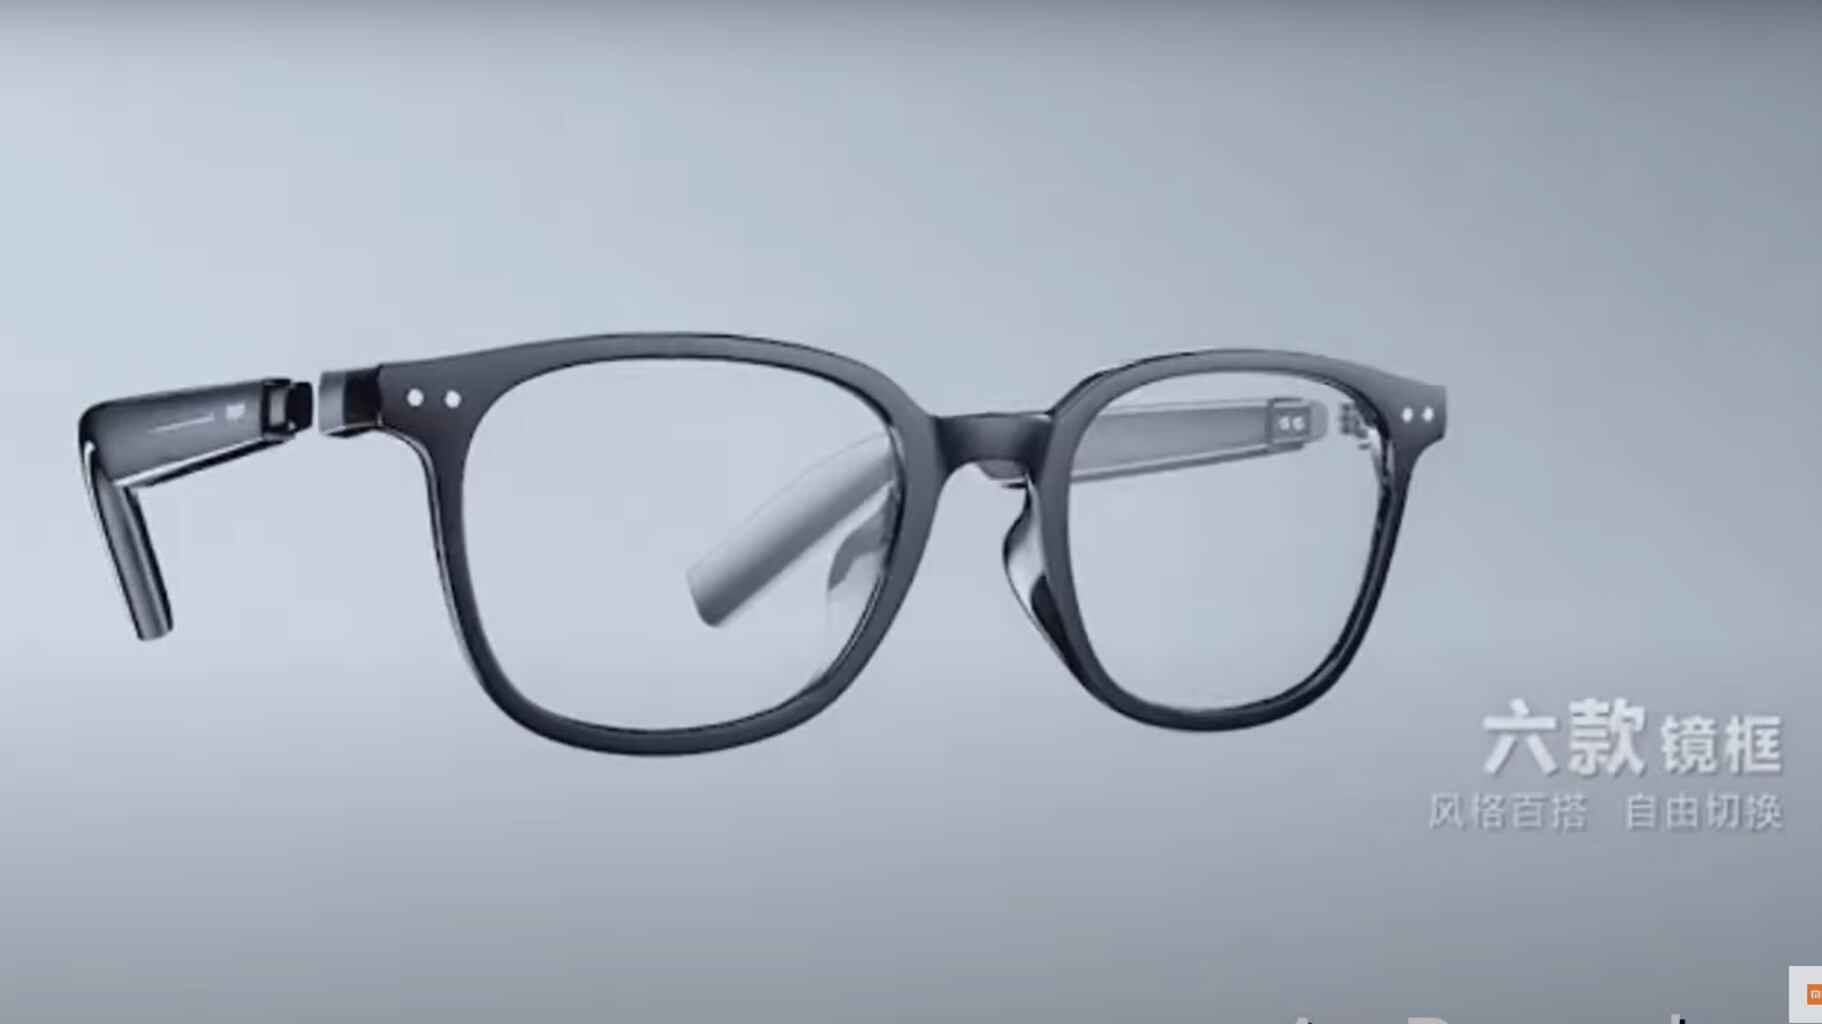 Xiaomi Projeta óculos Inteligentes Que Parecem Saídos De Um Filme De Ficção Científica Metro 5380